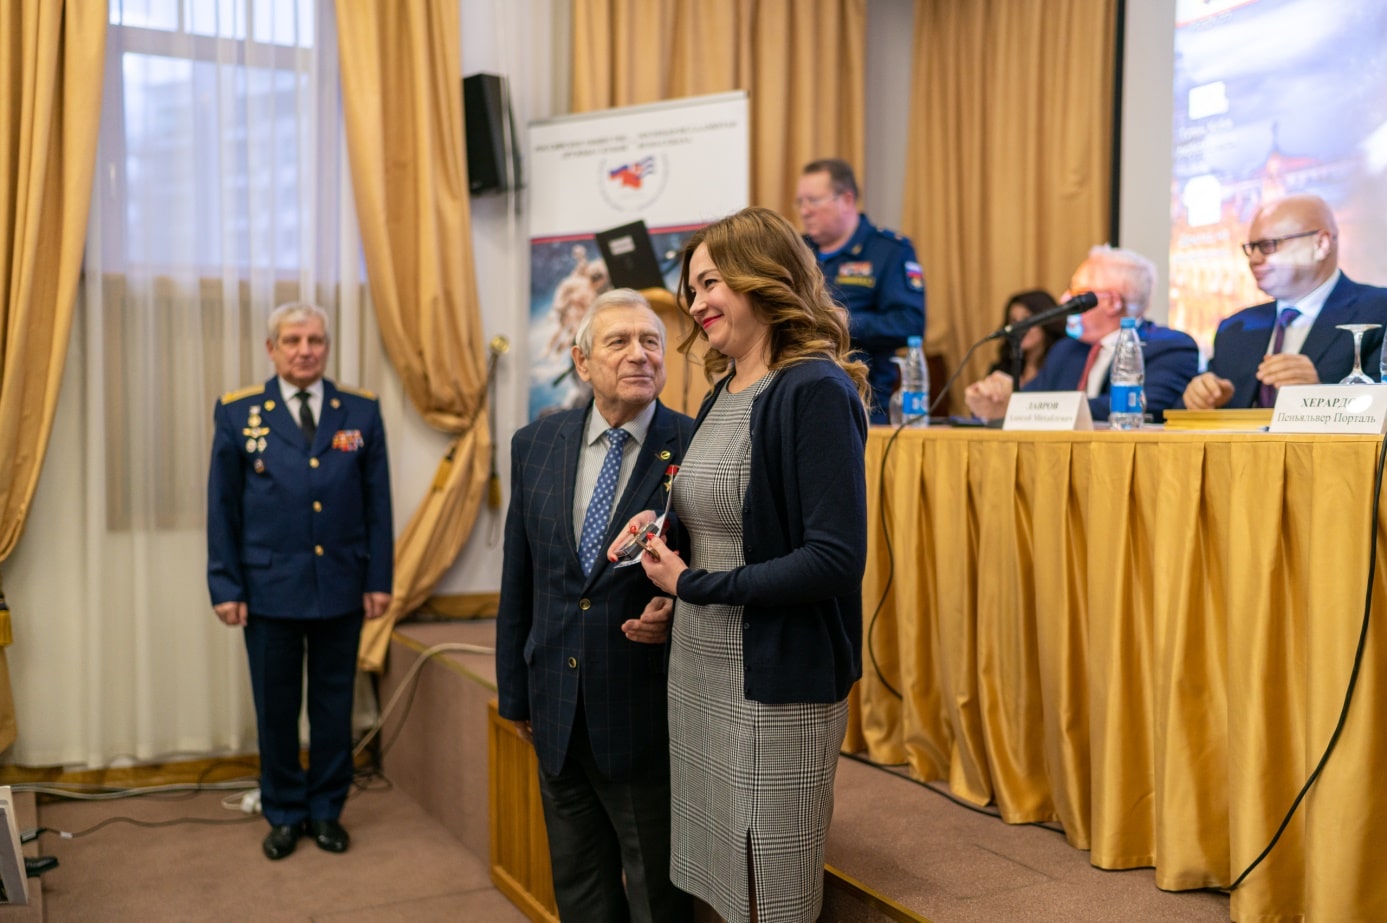 Вручение медали ответственному секретарю РОДК Юлии Суриловой

